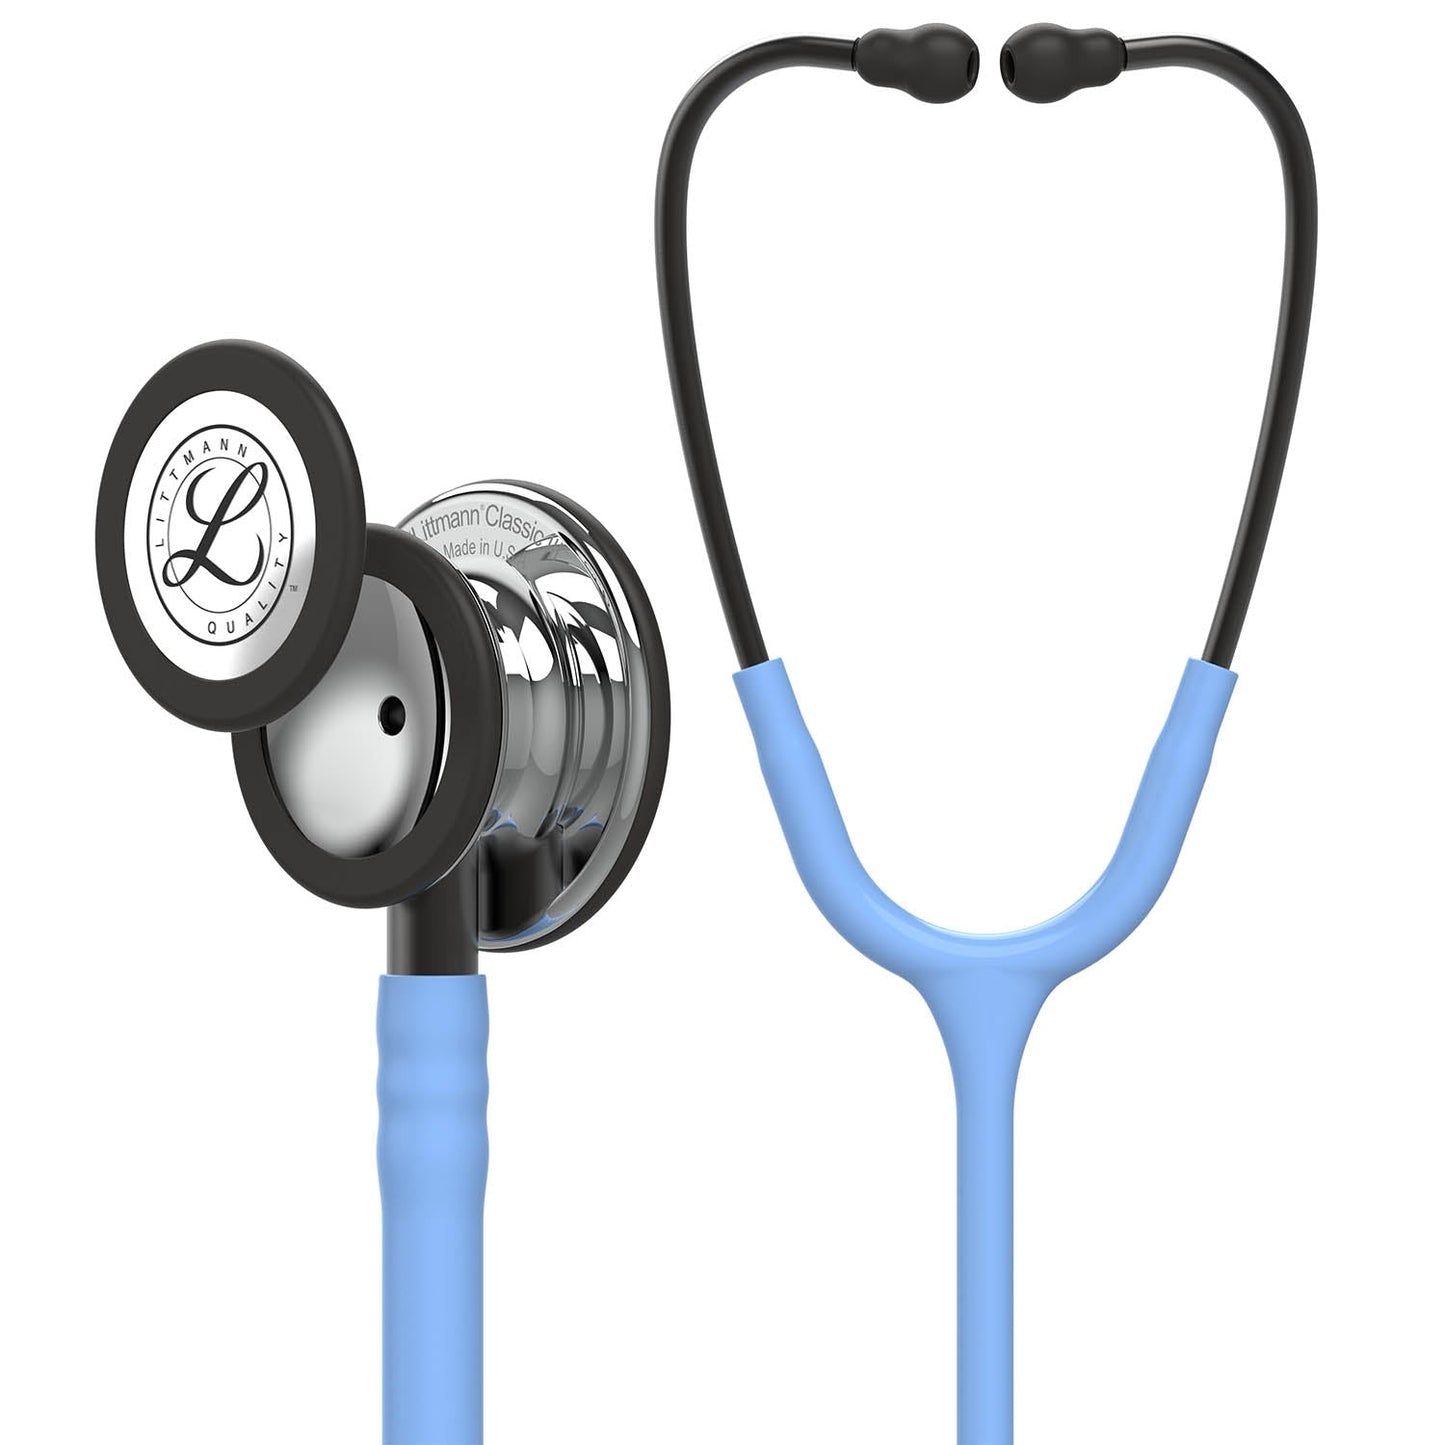 3M™ Littmann® Classic III™ -stetoskooppi, tarkkailuun, peilipintainen rintakappale, taivaansininen letkusto, savunvärinen suppilo ja savunväriset kuuntelukaaret, 27 tuumaa, 5959